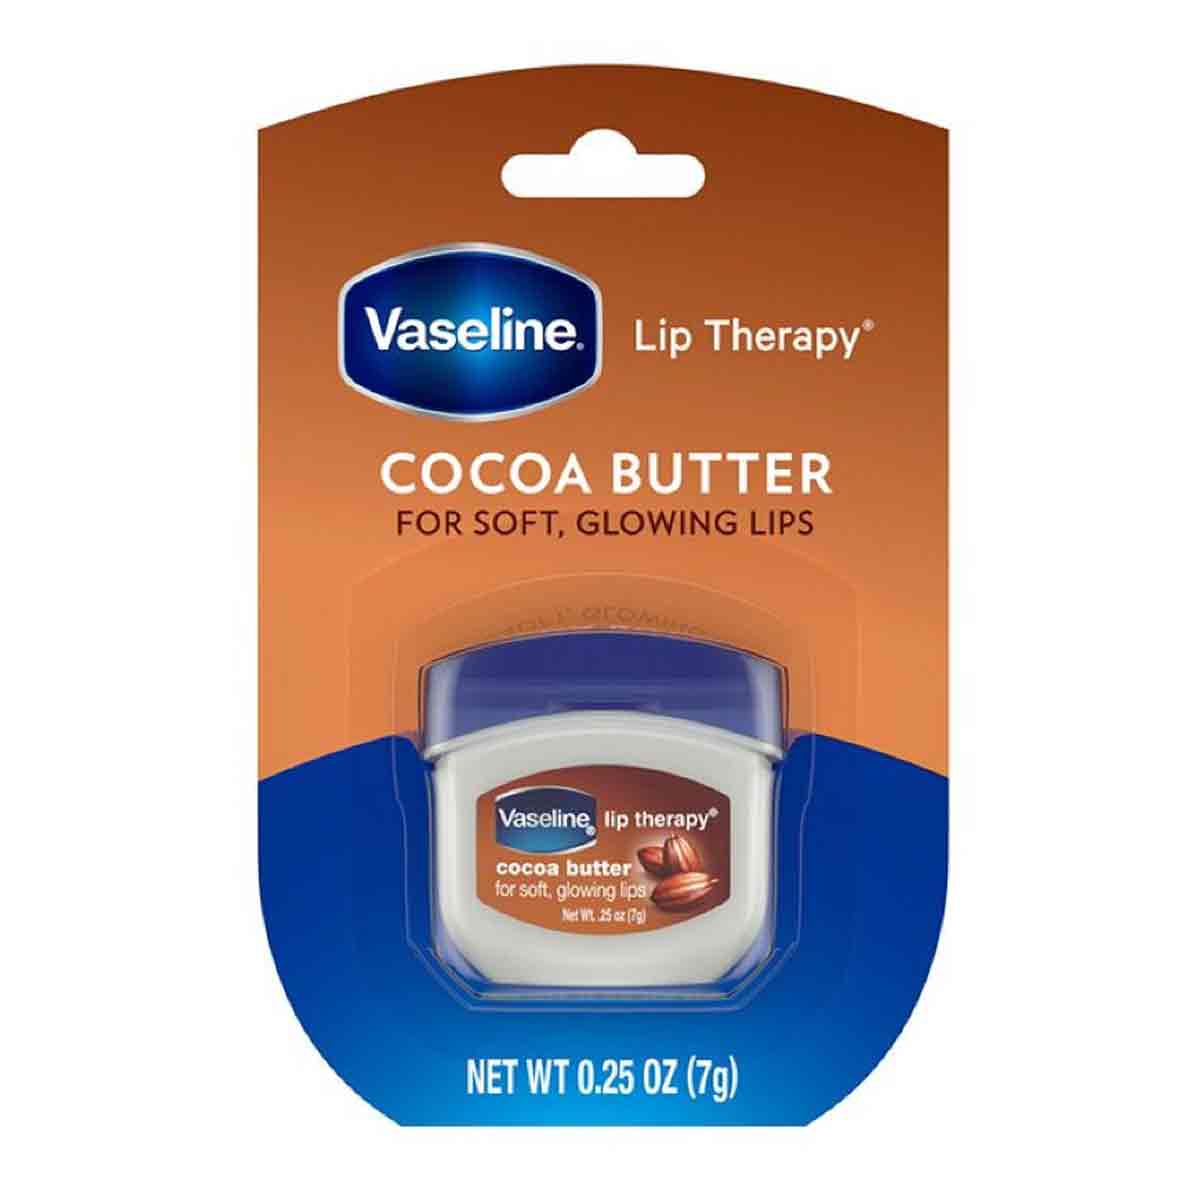 بالم لب درمانی (بوم لب) وازلین Vaseline مدل Cocoa Butter حجم 7 گرم